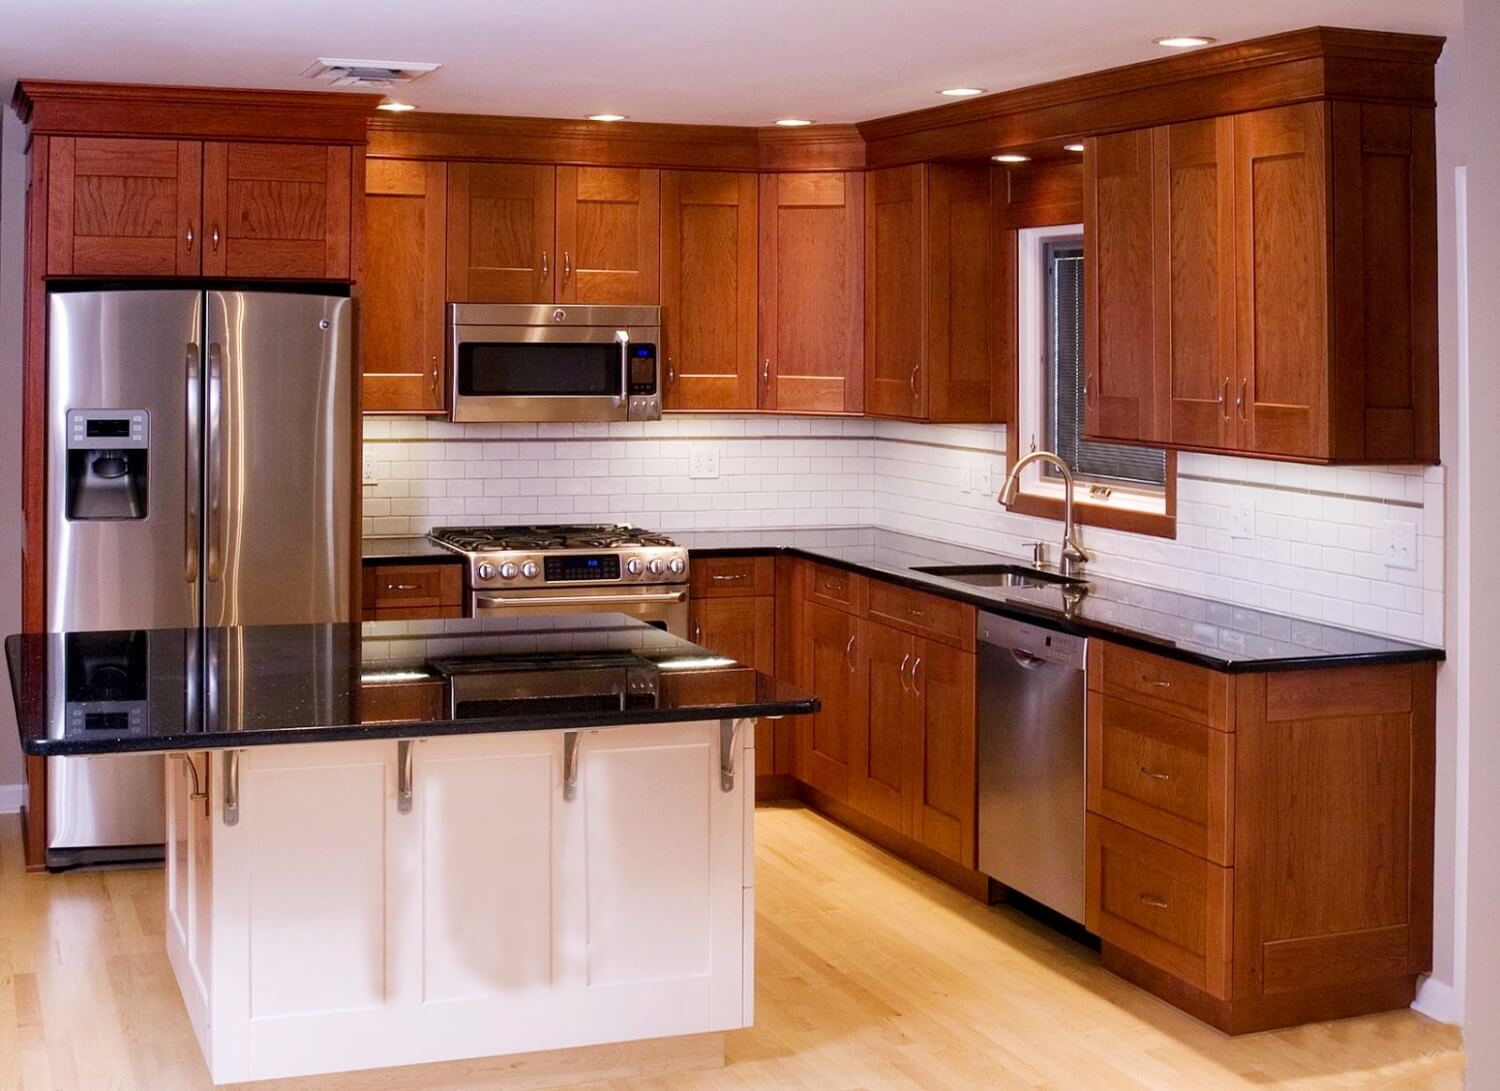 Tủ bếp xoan đào có đặc điểm gì? Đánh giá ưu – nhược điểm của tủ bếp xoan đào